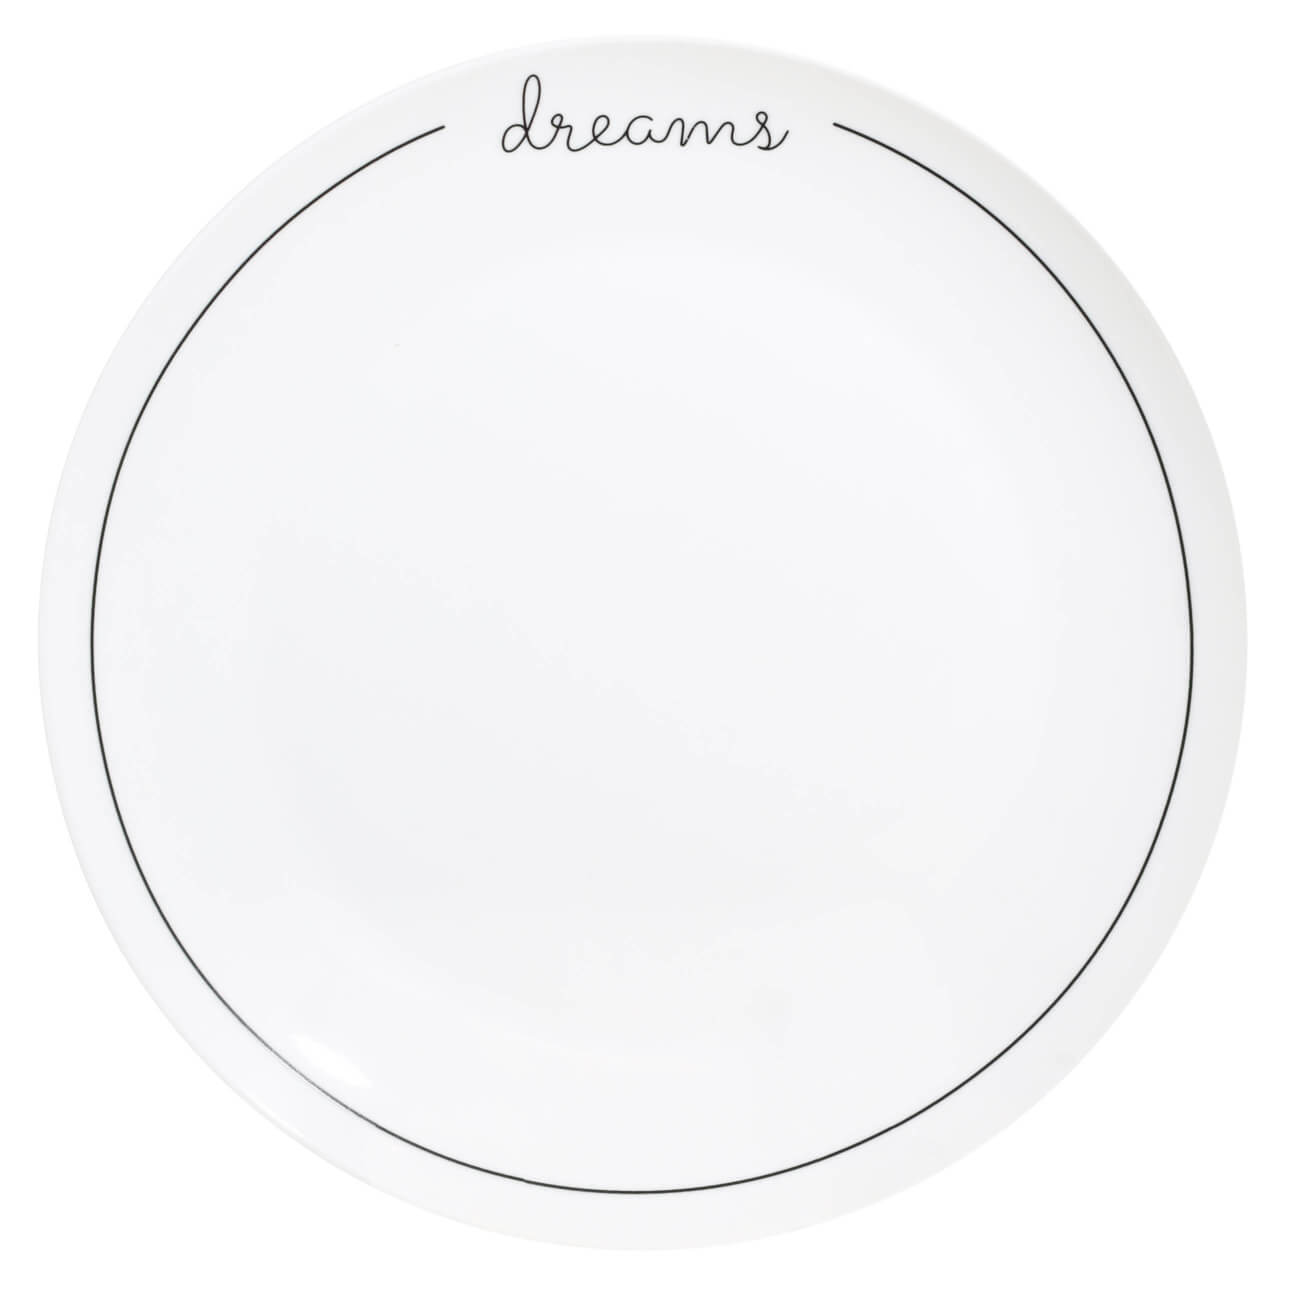 Тарелка обеденная, 27 см, фарфор N, белая, Dreams, Scroll white тарелка обеденная 26 см фарфор f белая ideal white